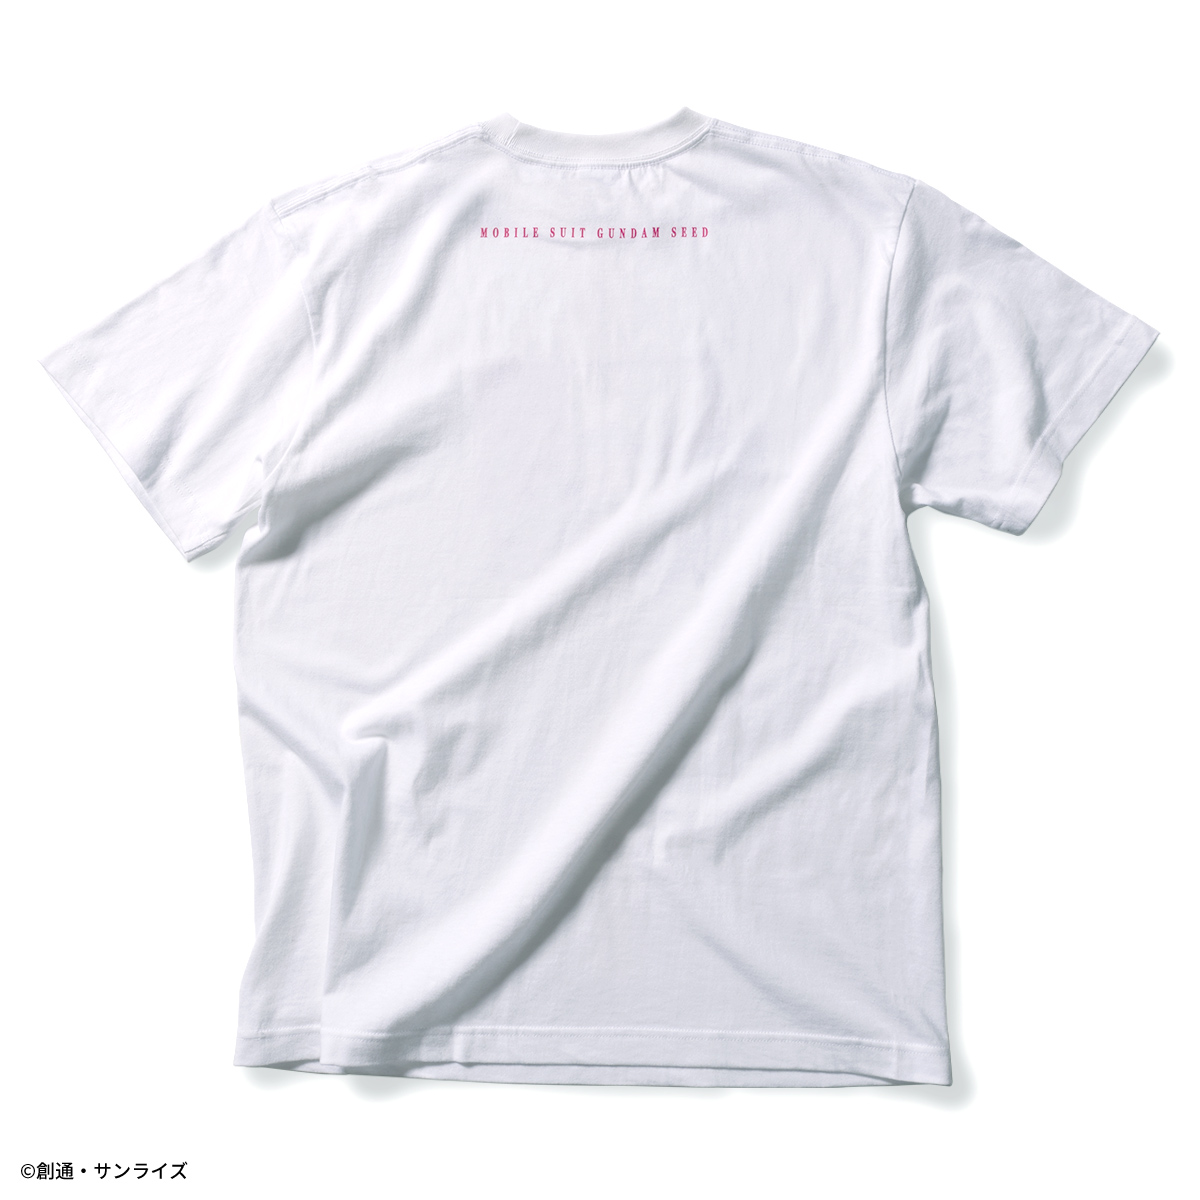 『機動戦士ガンダムSEED』より夏らしいグラデーションをテーマにしたサマーコレクションを展開!Tシャツ、ワークシャツ、キャップの新柄が登場!